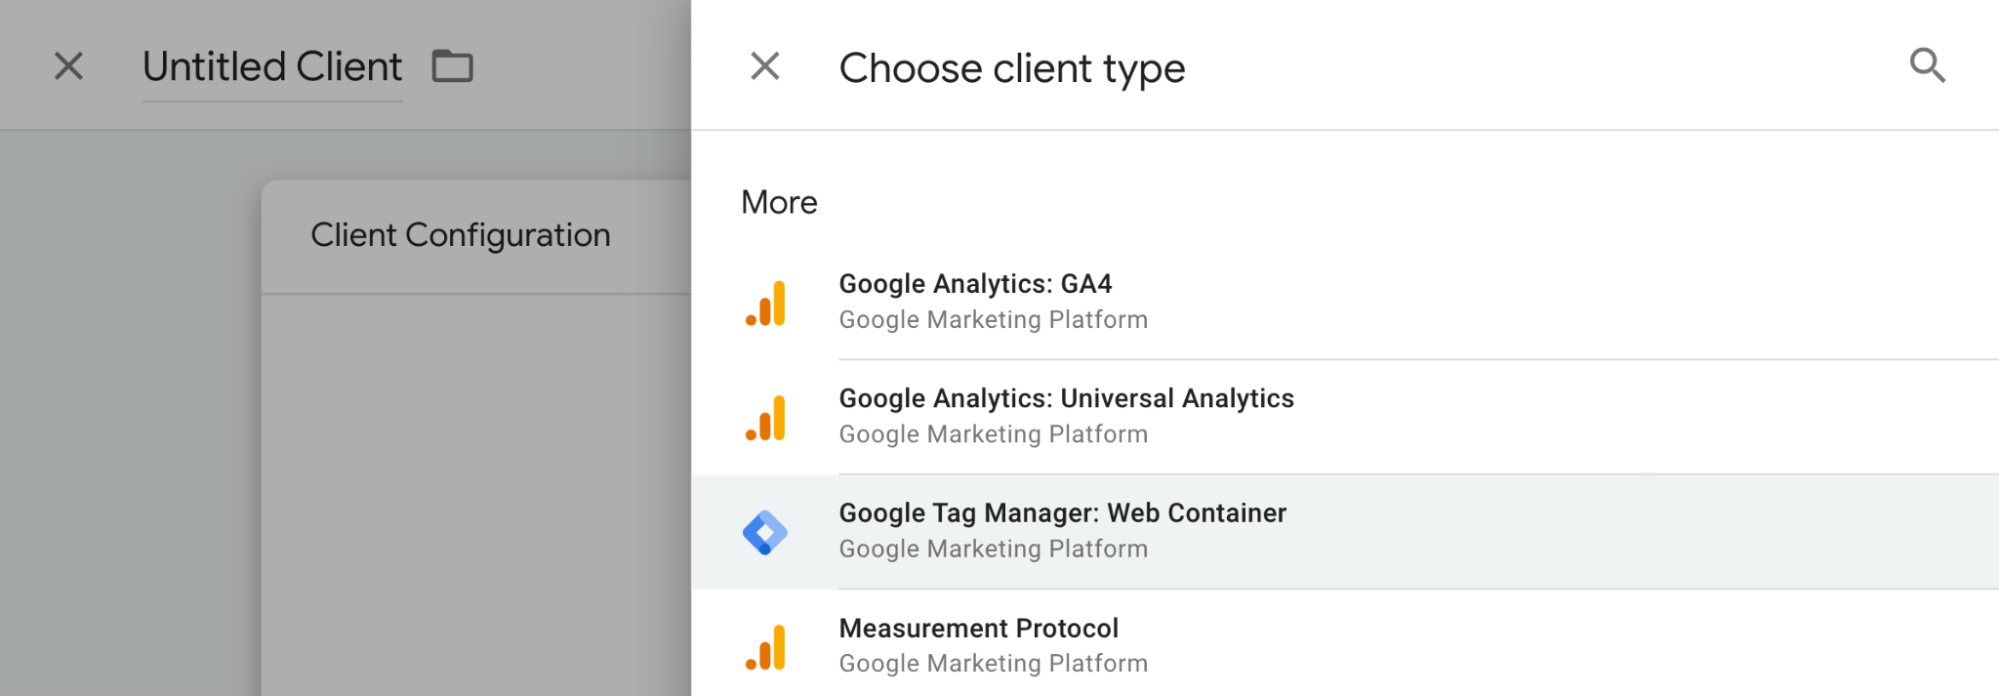 Cuadro de diálogo de selección del tipo de cliente, en el que se resalta el cliente Google Tag Manager: contenedor web